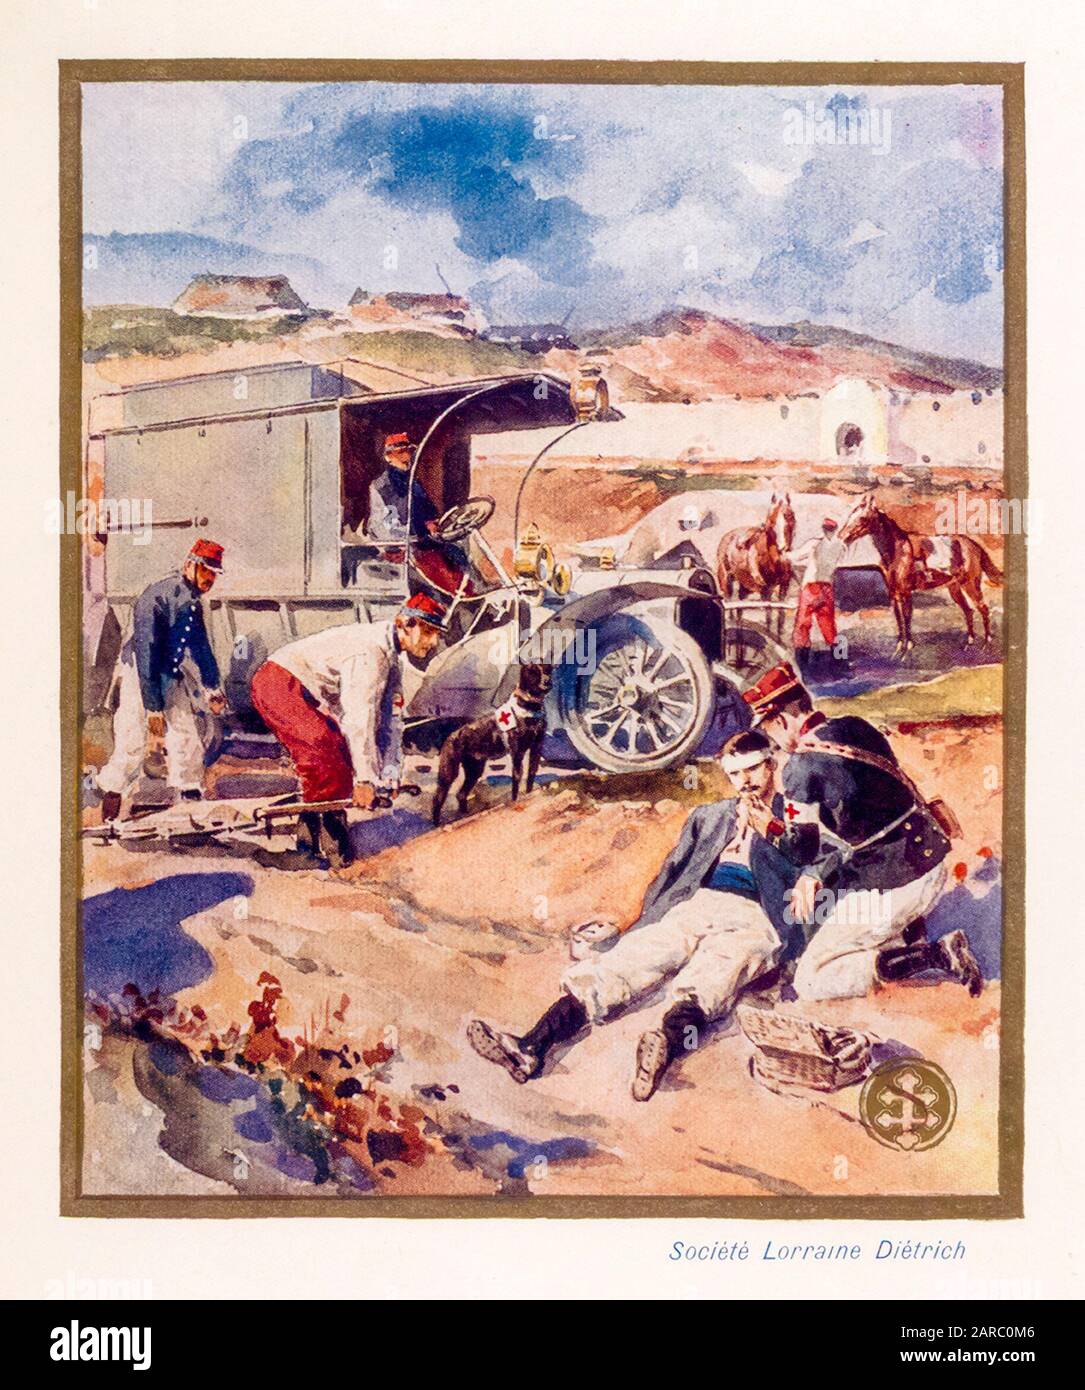 Lorraine Diétrich Automobiles utilizado como ambulancia durante la guerra, ilustración promocional 1909 Foto de stock